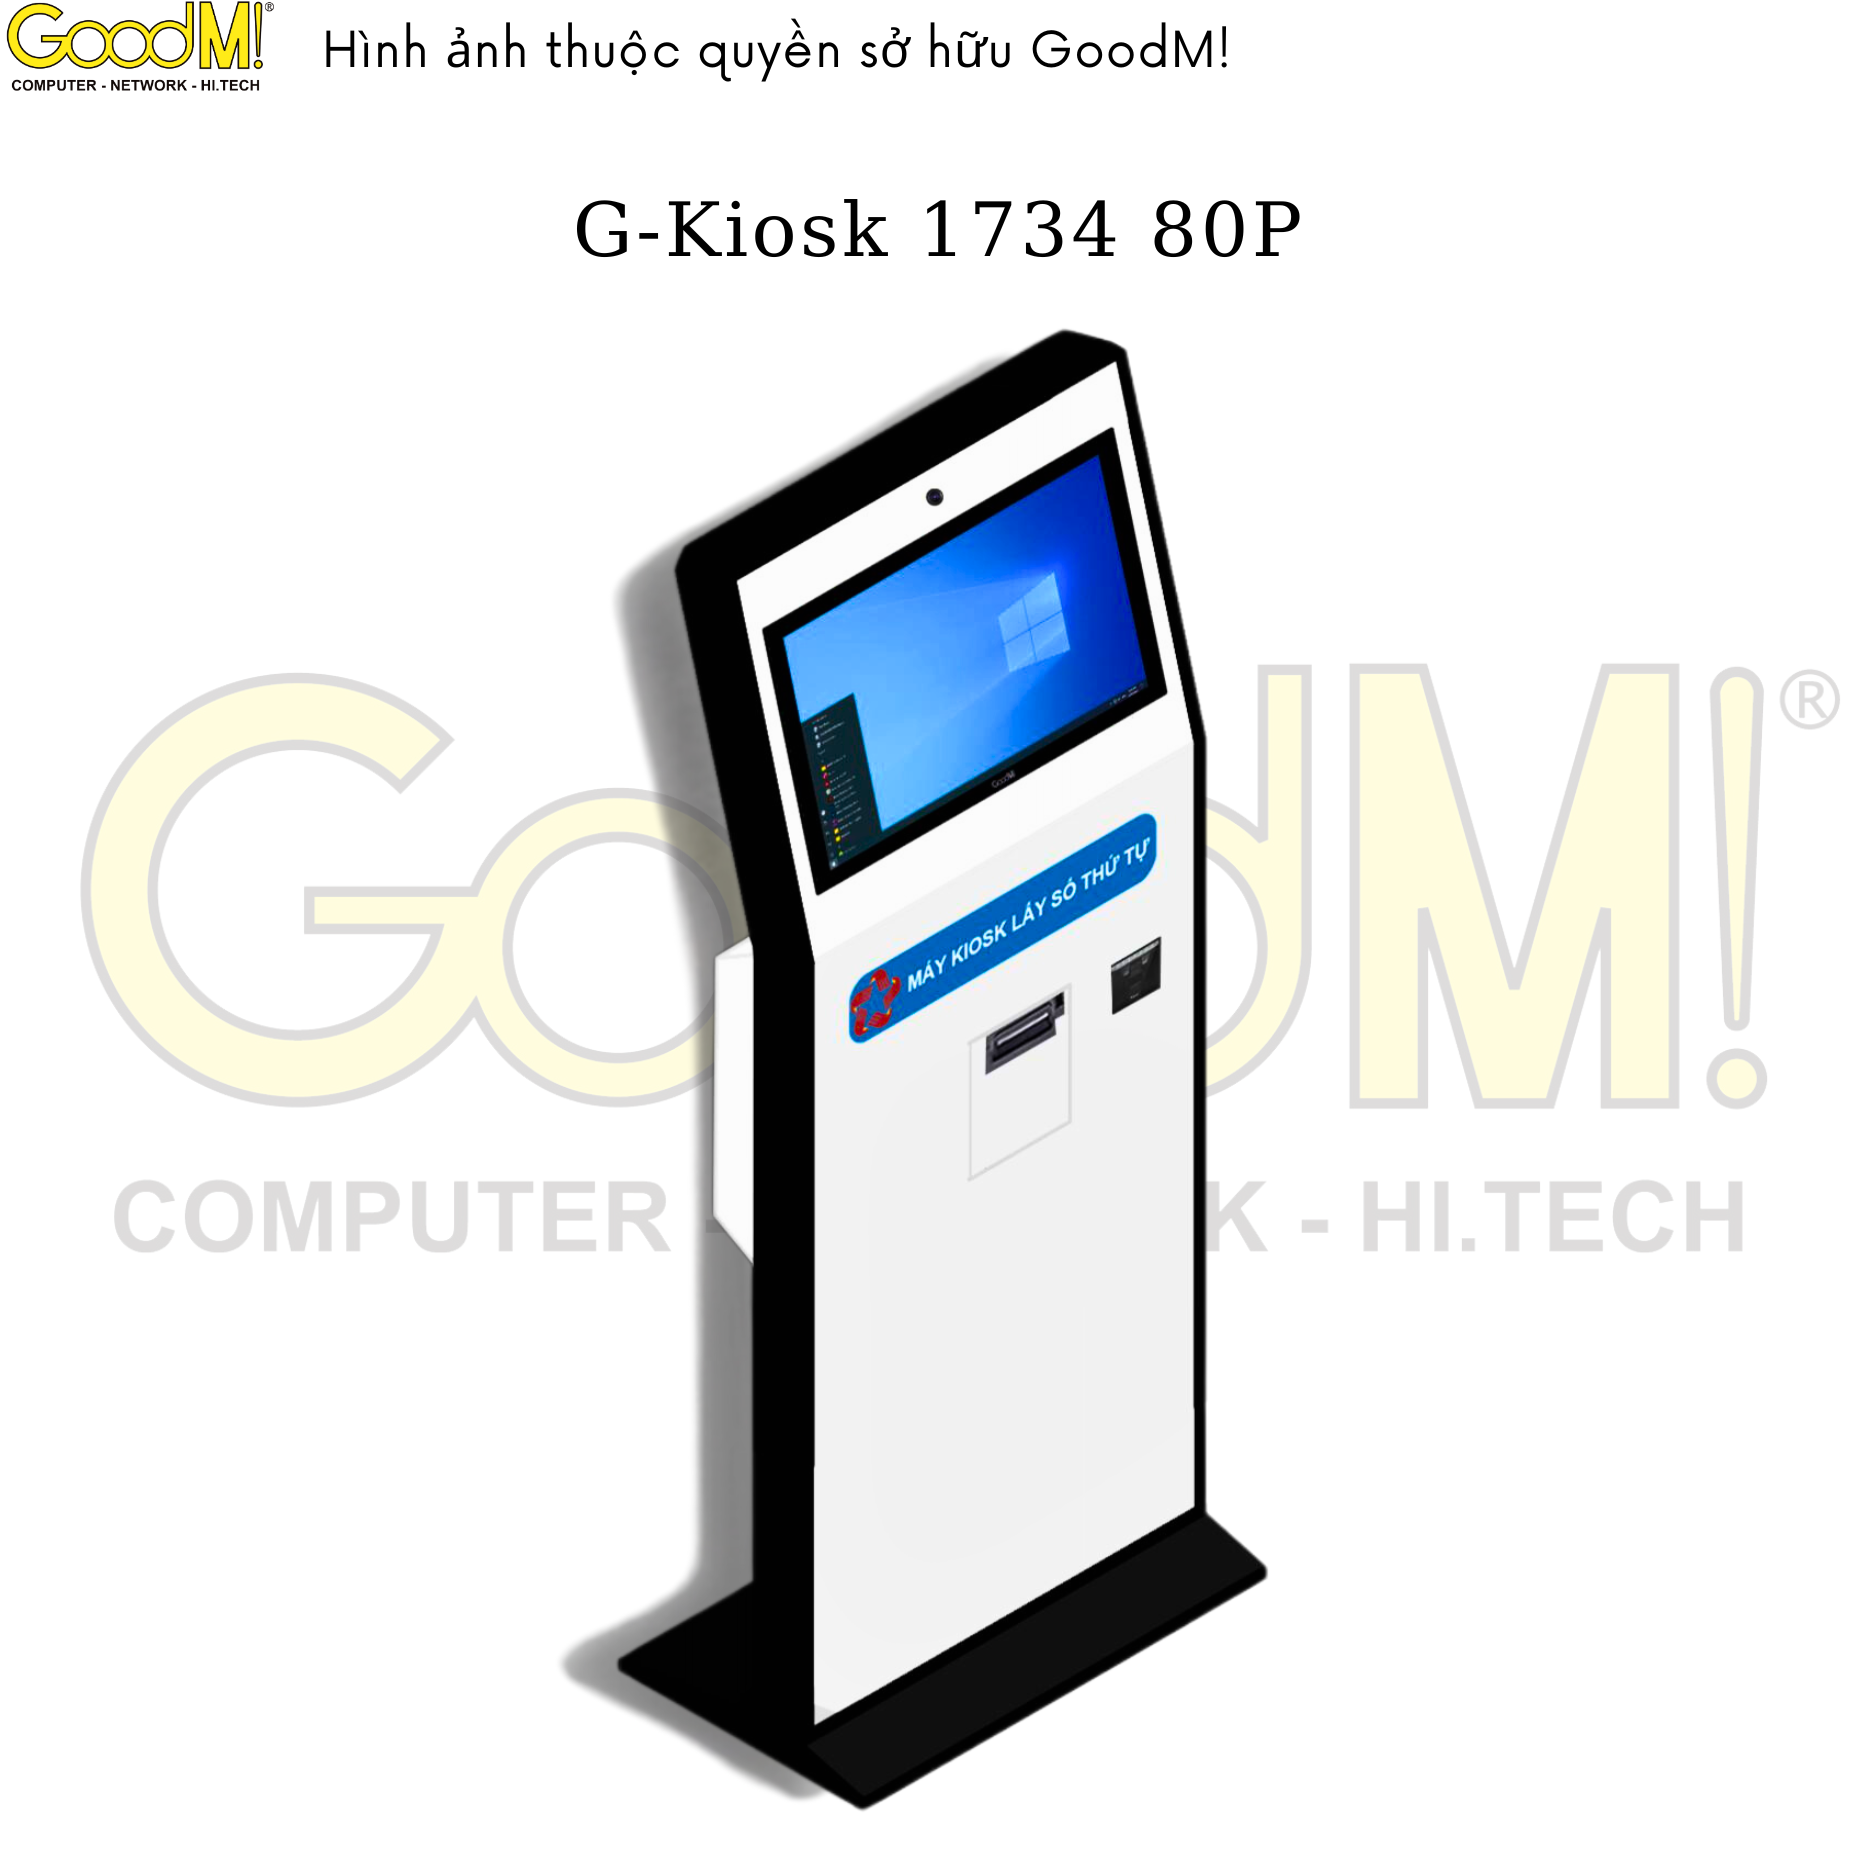  Kiosk Tra Cứu Thông Tin G-KIOSK 1734 80P 